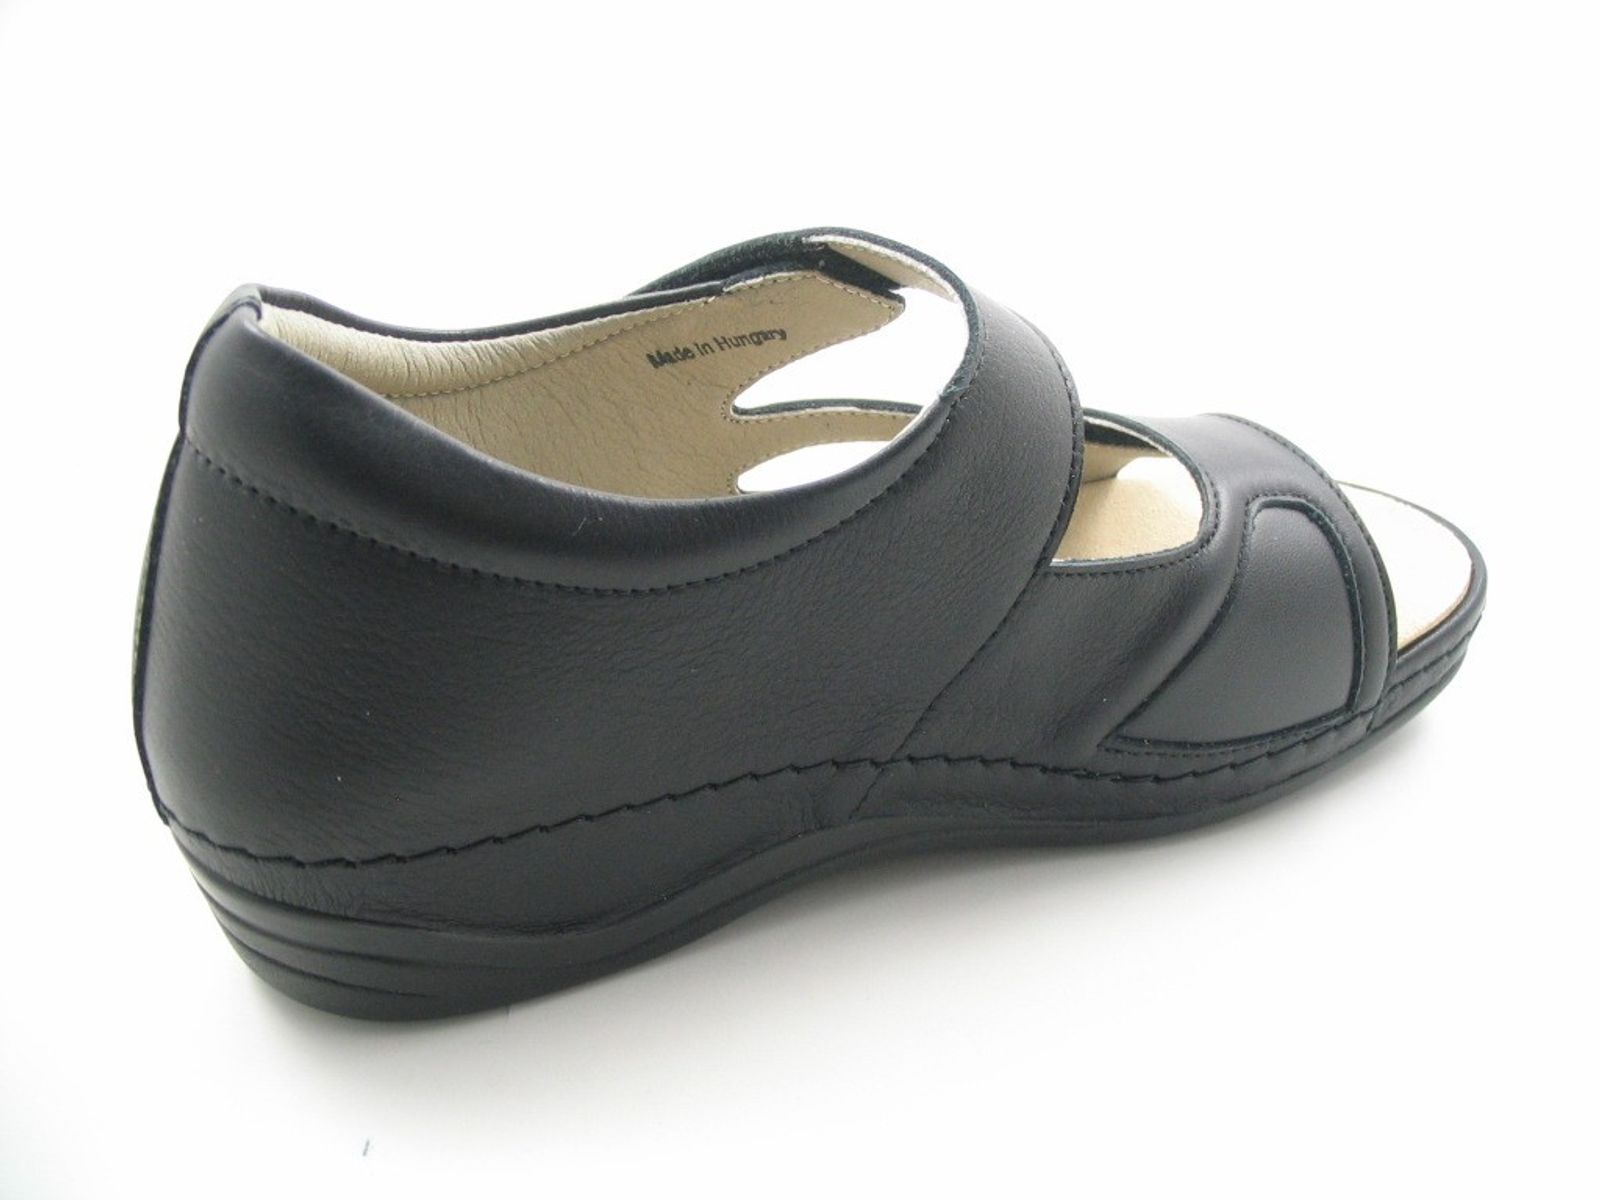 Schuh von Acti Flex, 5